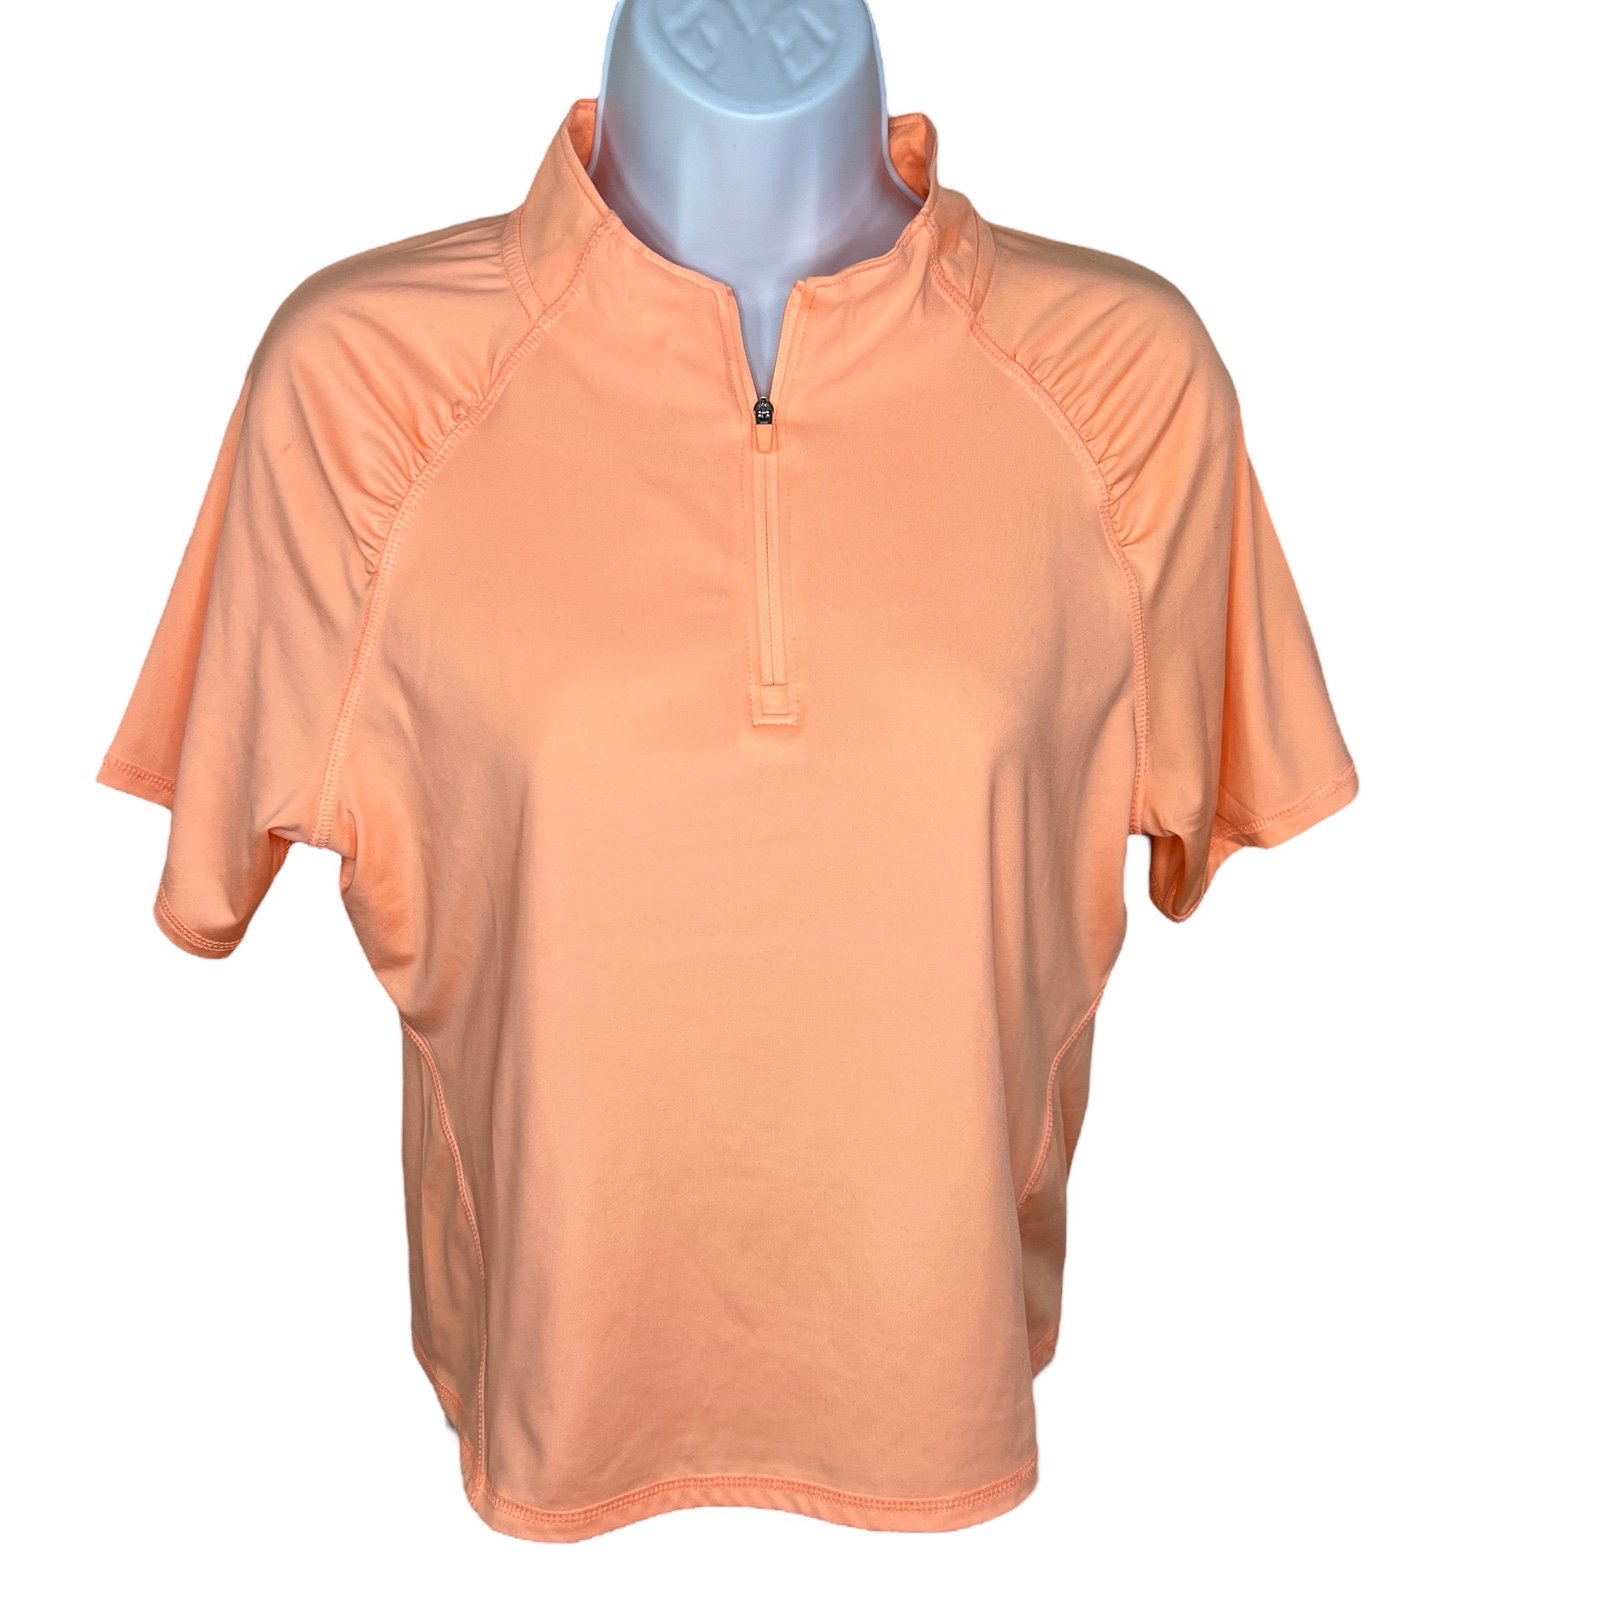 Nice Medium Hind Peach Orange Golf Polo Shirt Short Sle